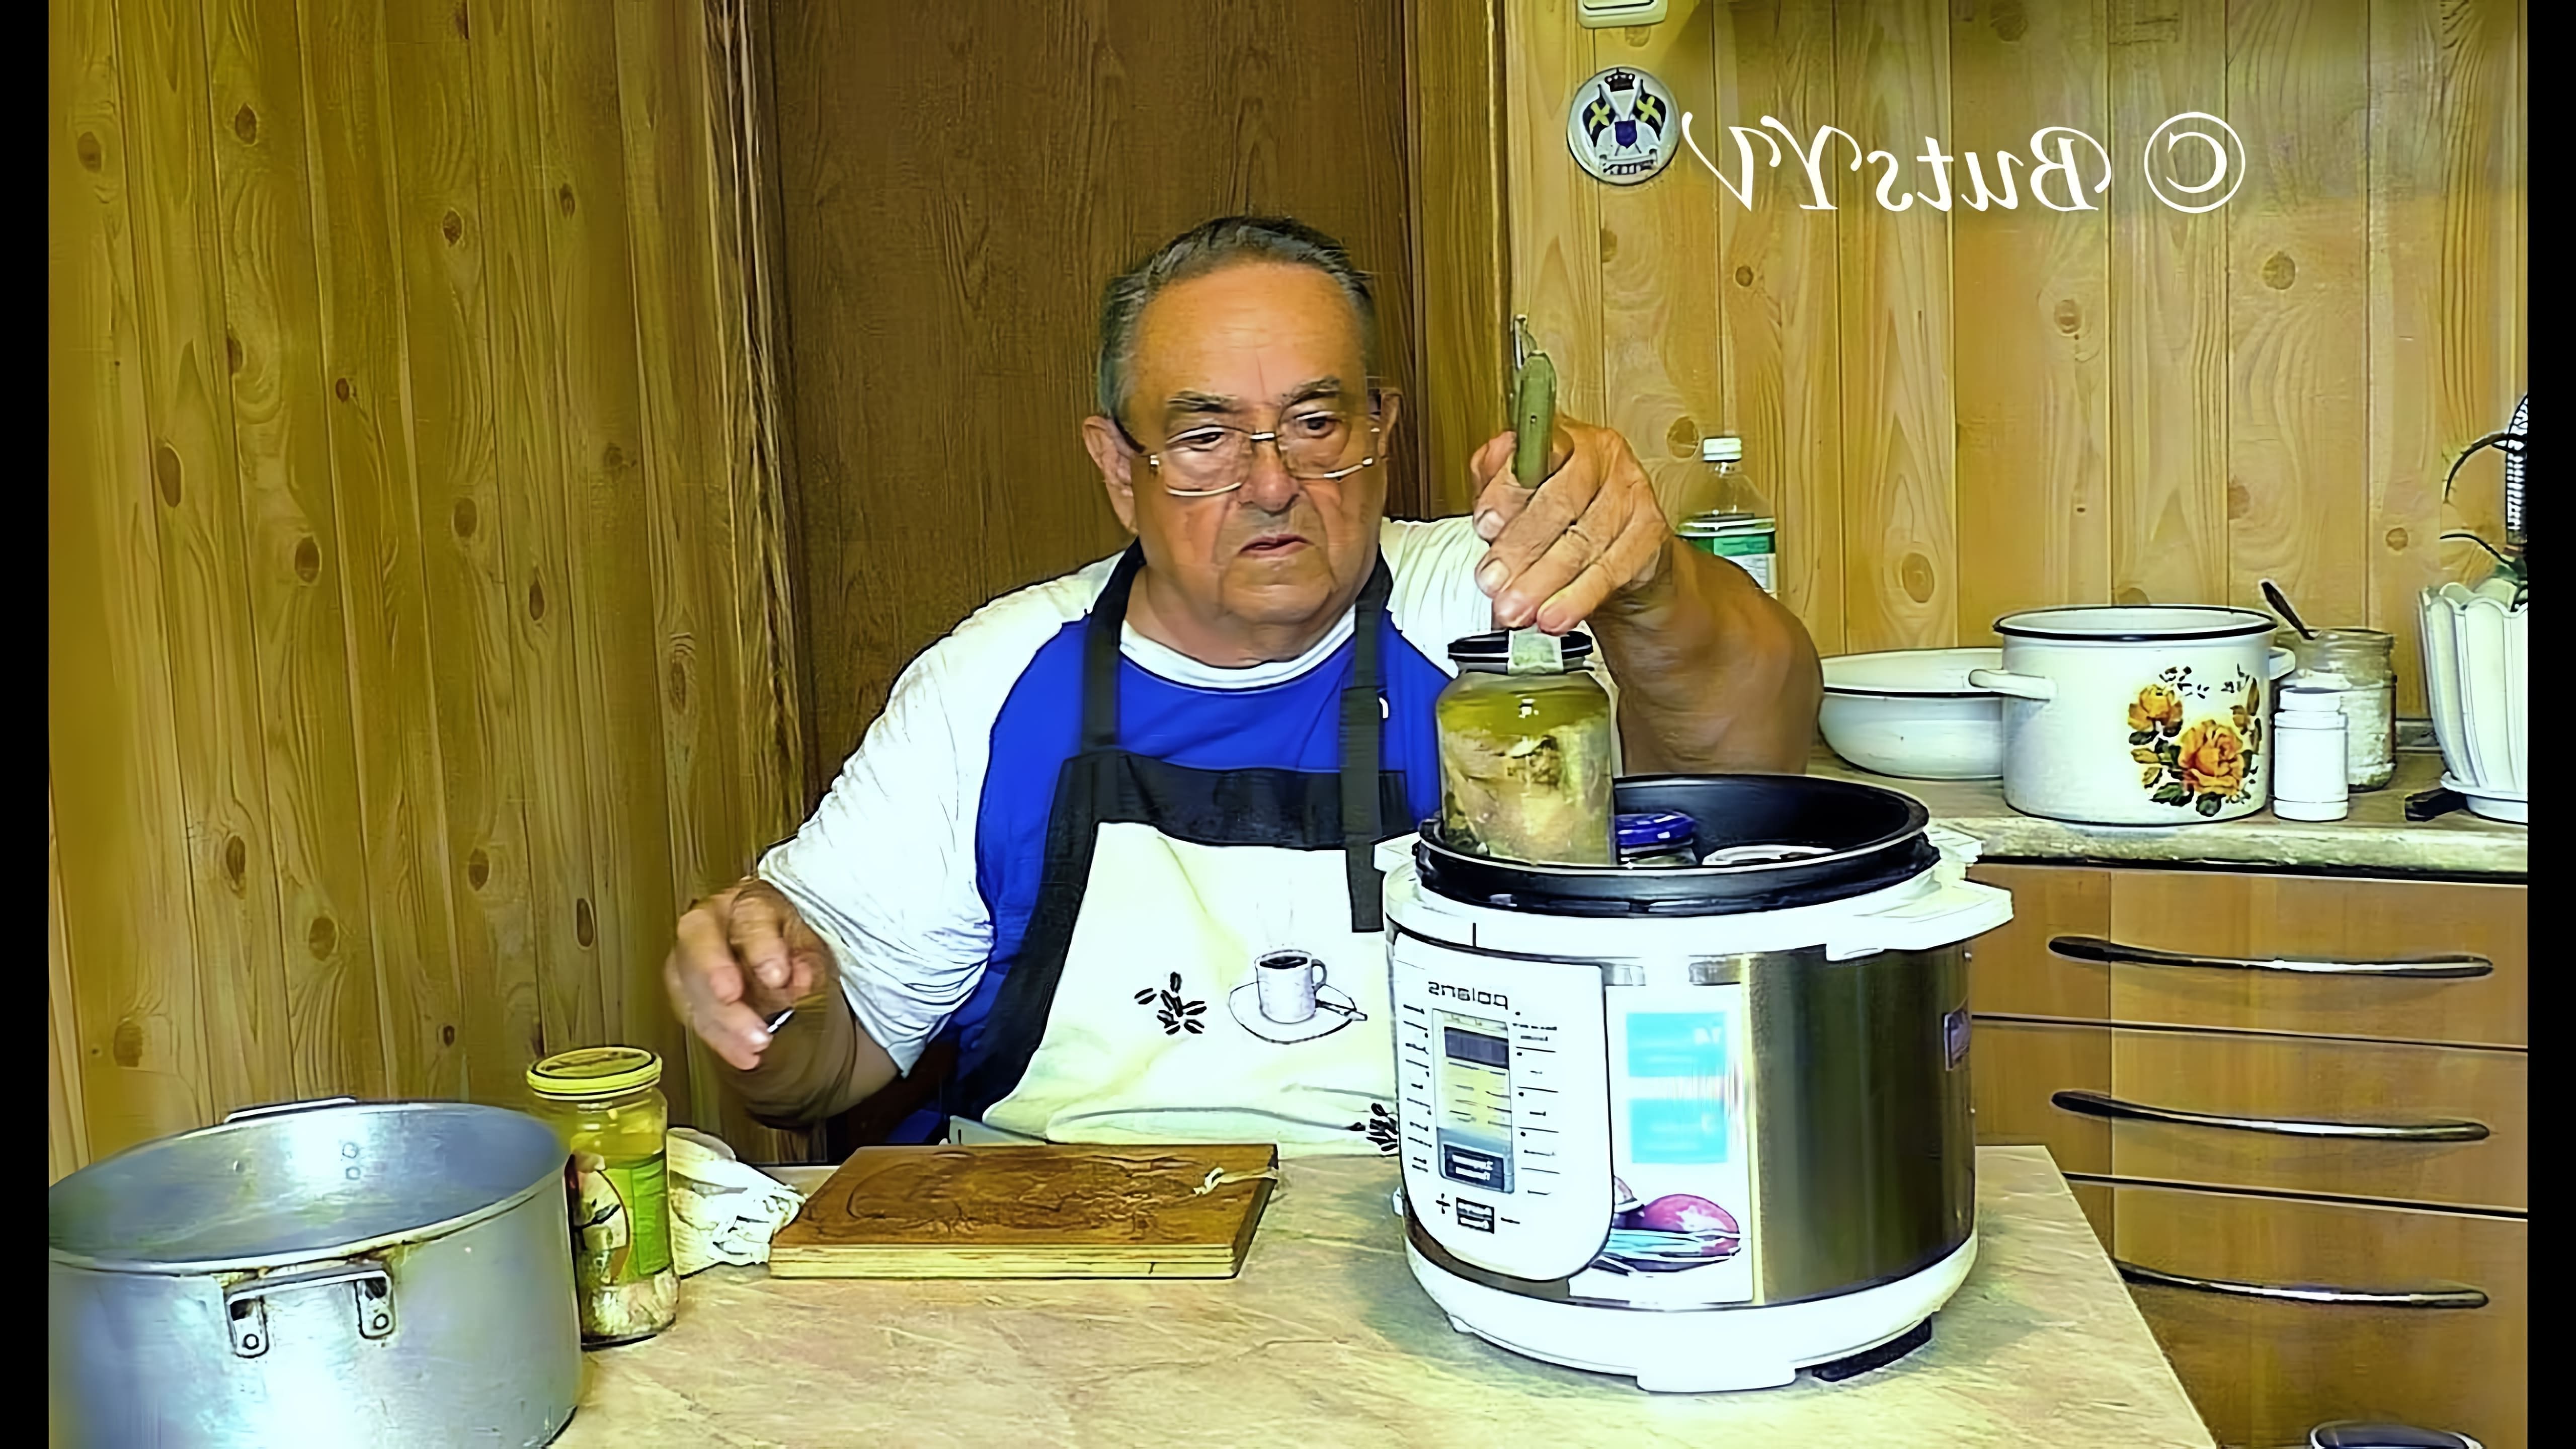 В этом видео демонстрируется процесс приготовления рыбных консервов в масле при помощи мультиварки-скороварки